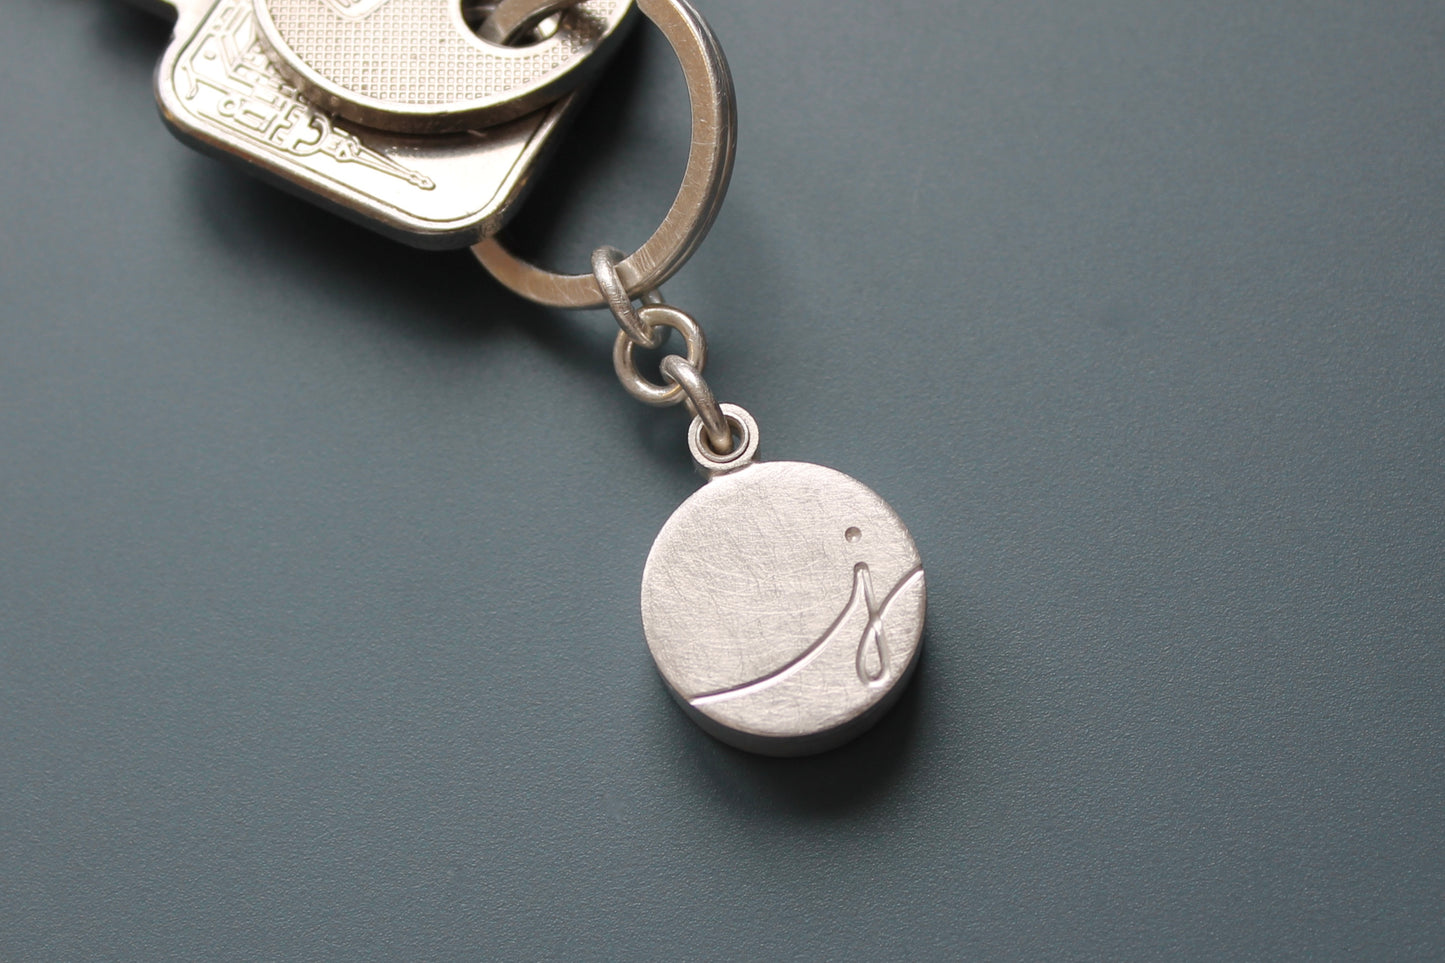 kleiner Schlüsselanhänger aus Sterling Silber mit Wunschinitiale